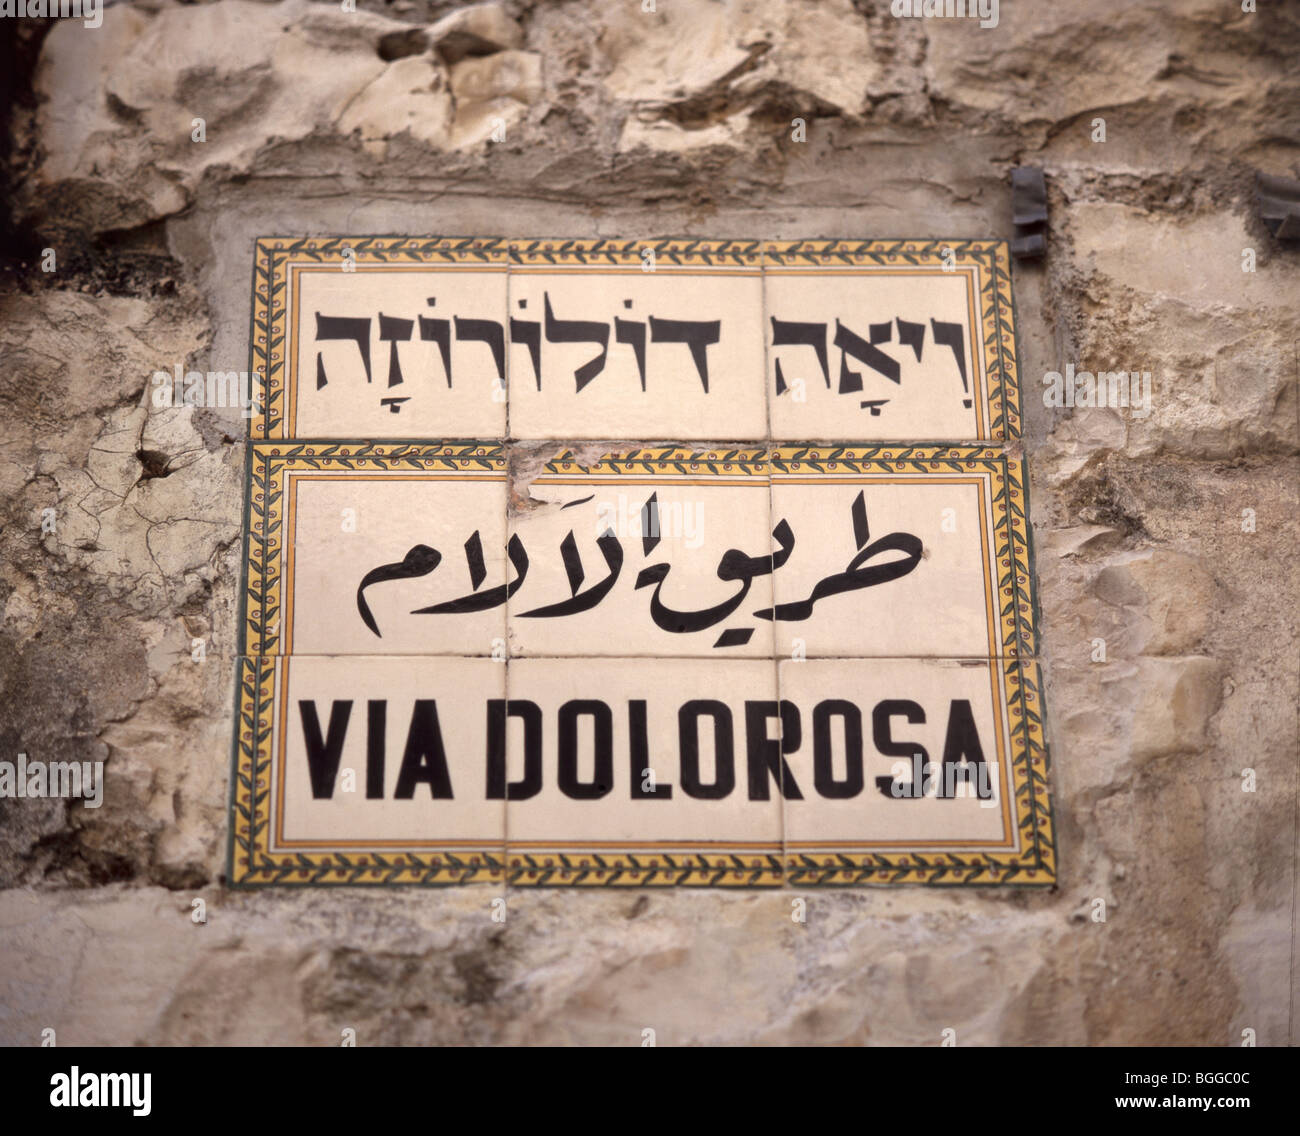 Via Dolorosa street sign, vieille ville, Jérusalem, Israël Banque D'Images